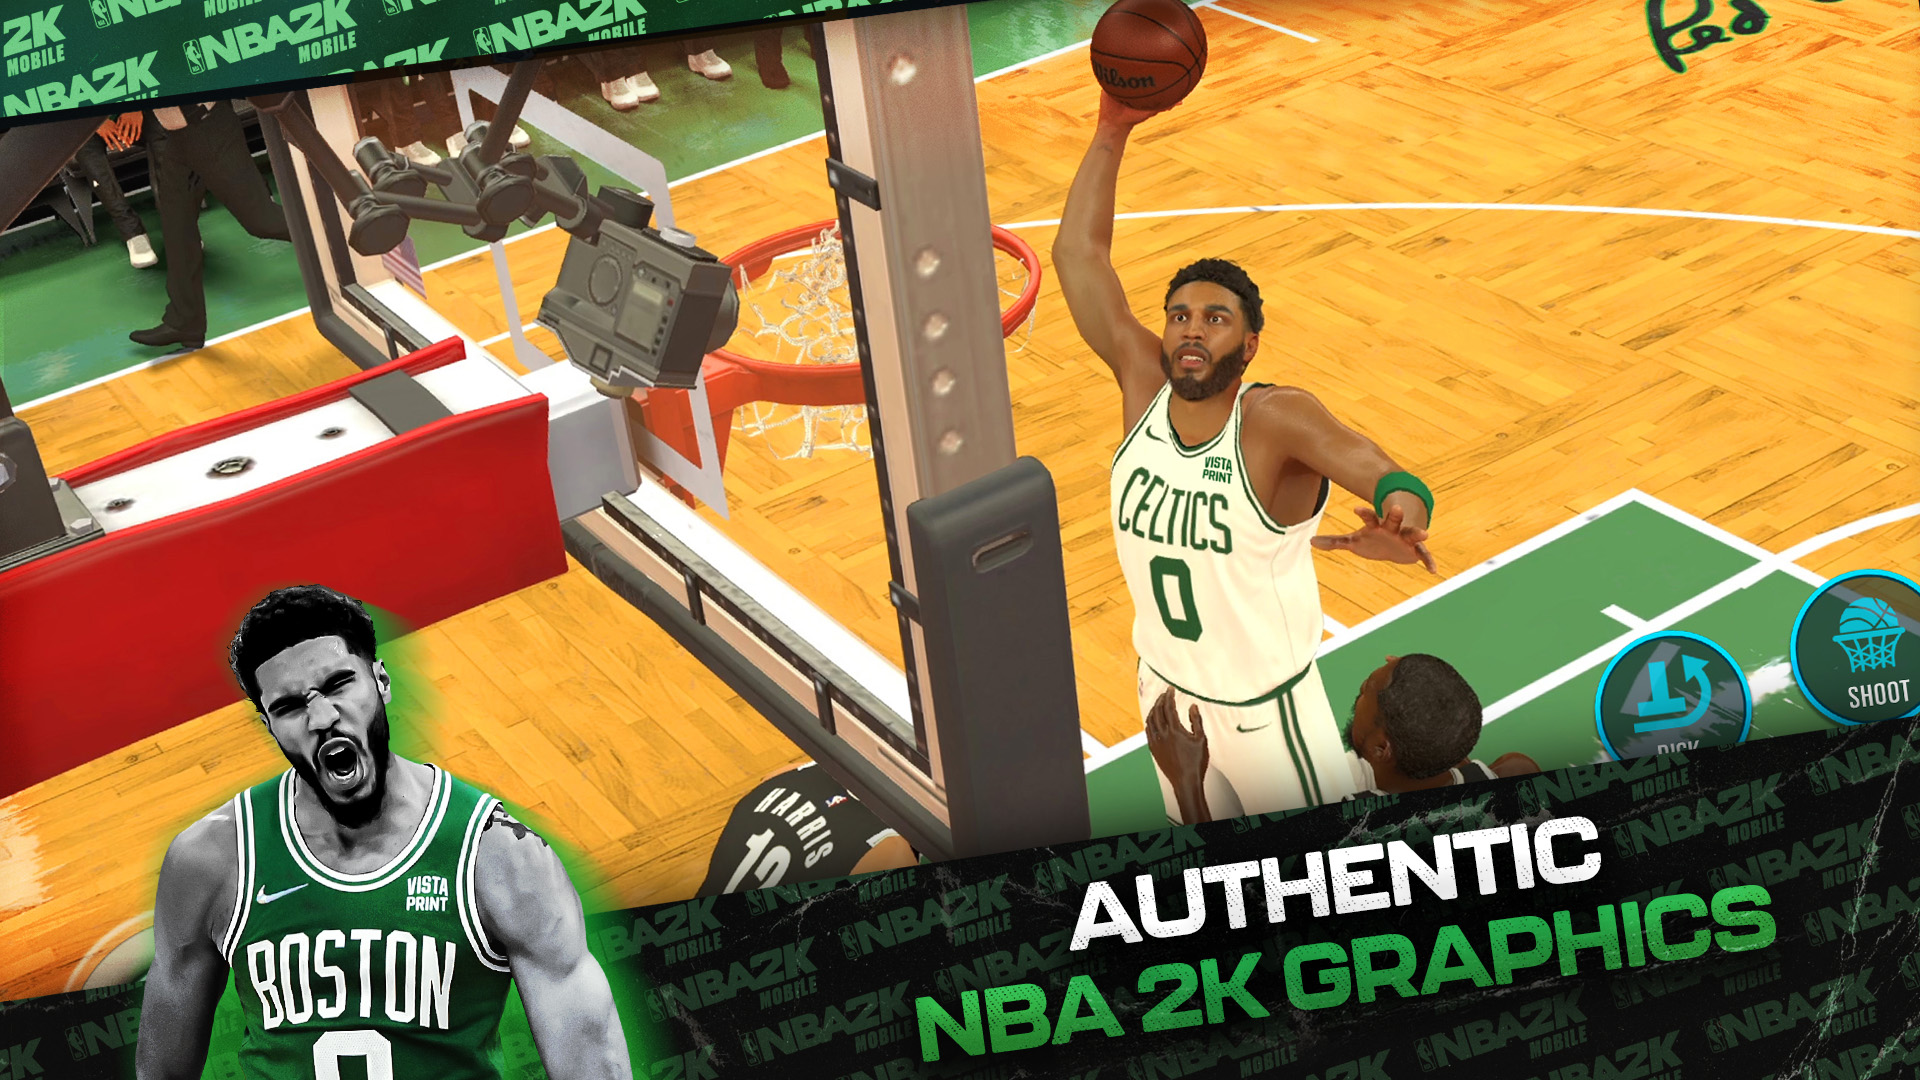 Play NBA 2K Mobile Basketball Game Online